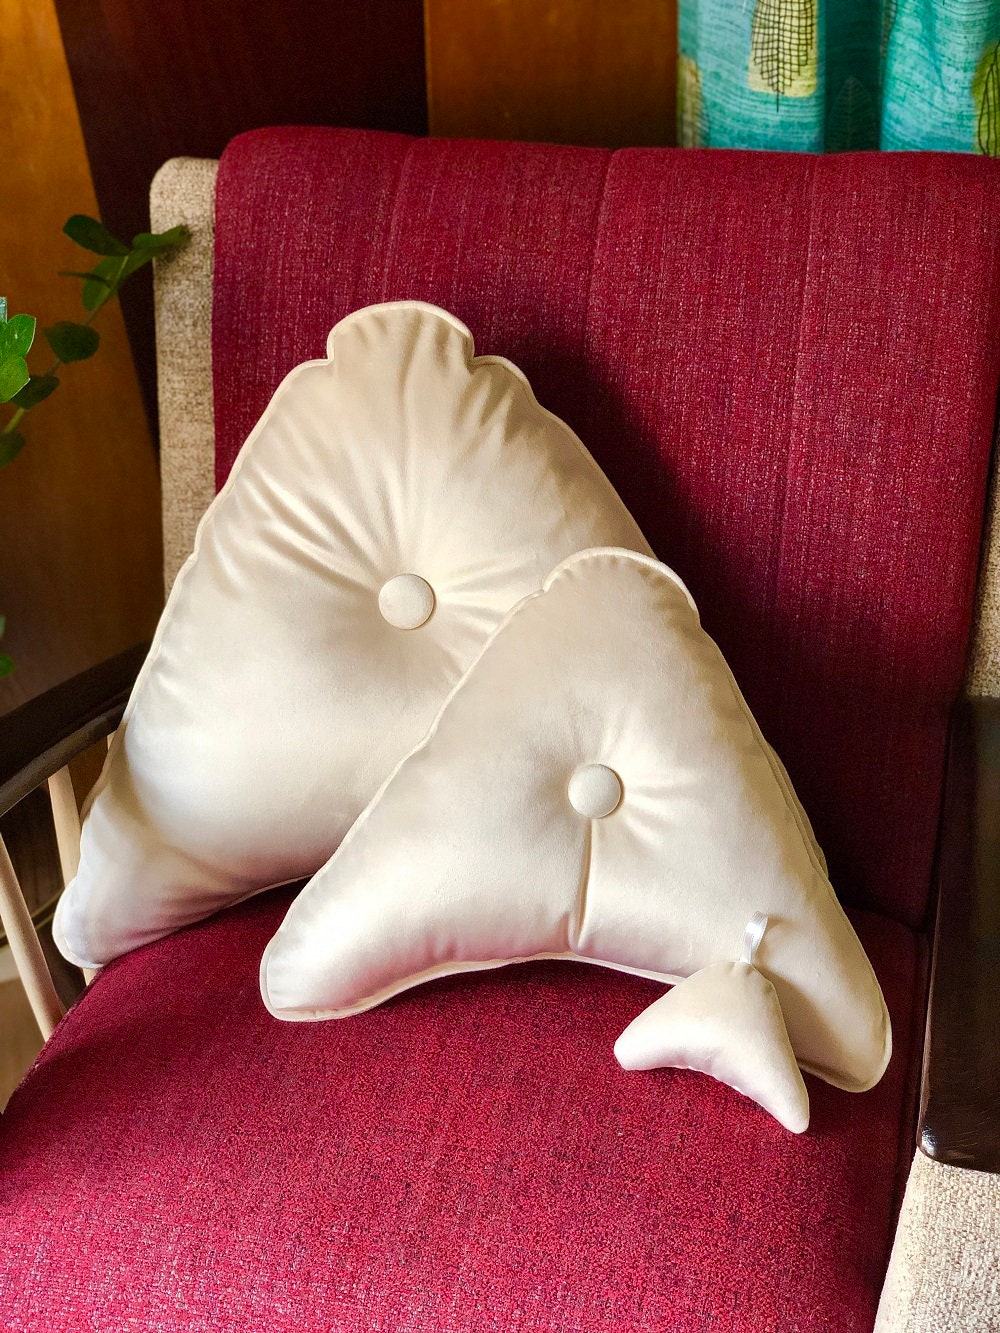 4-Vintage 70's MECO Shagalicious Plaid Upholstered Cushion